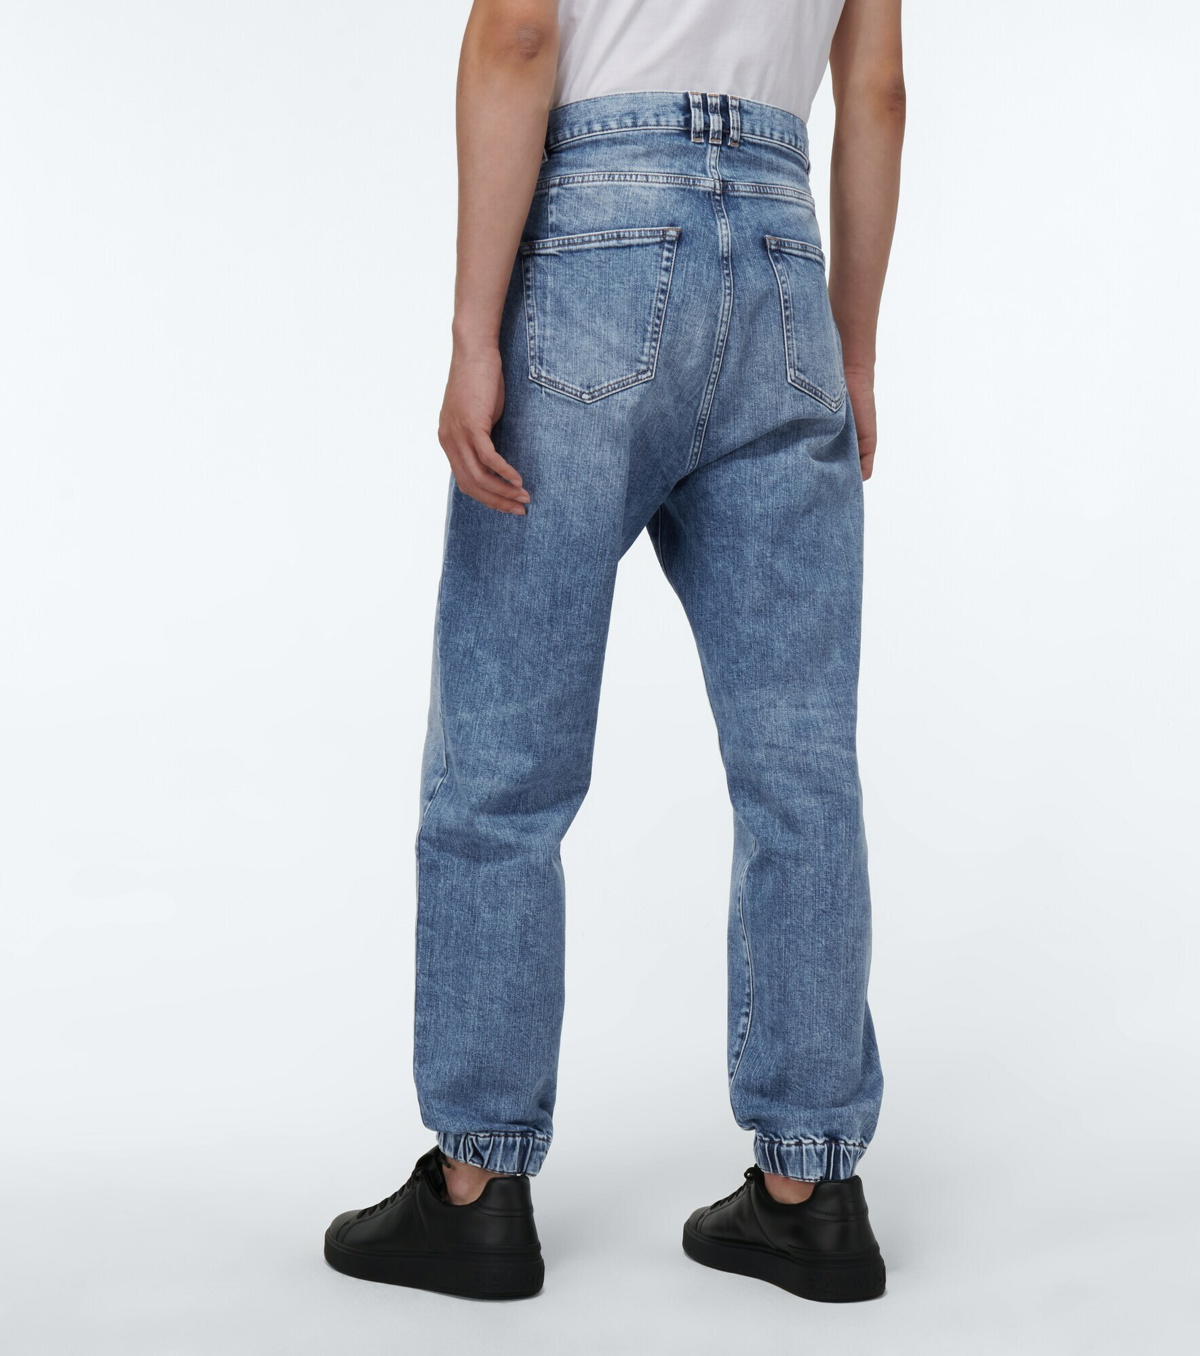 Balmain - Low-crotch jeans Balmain